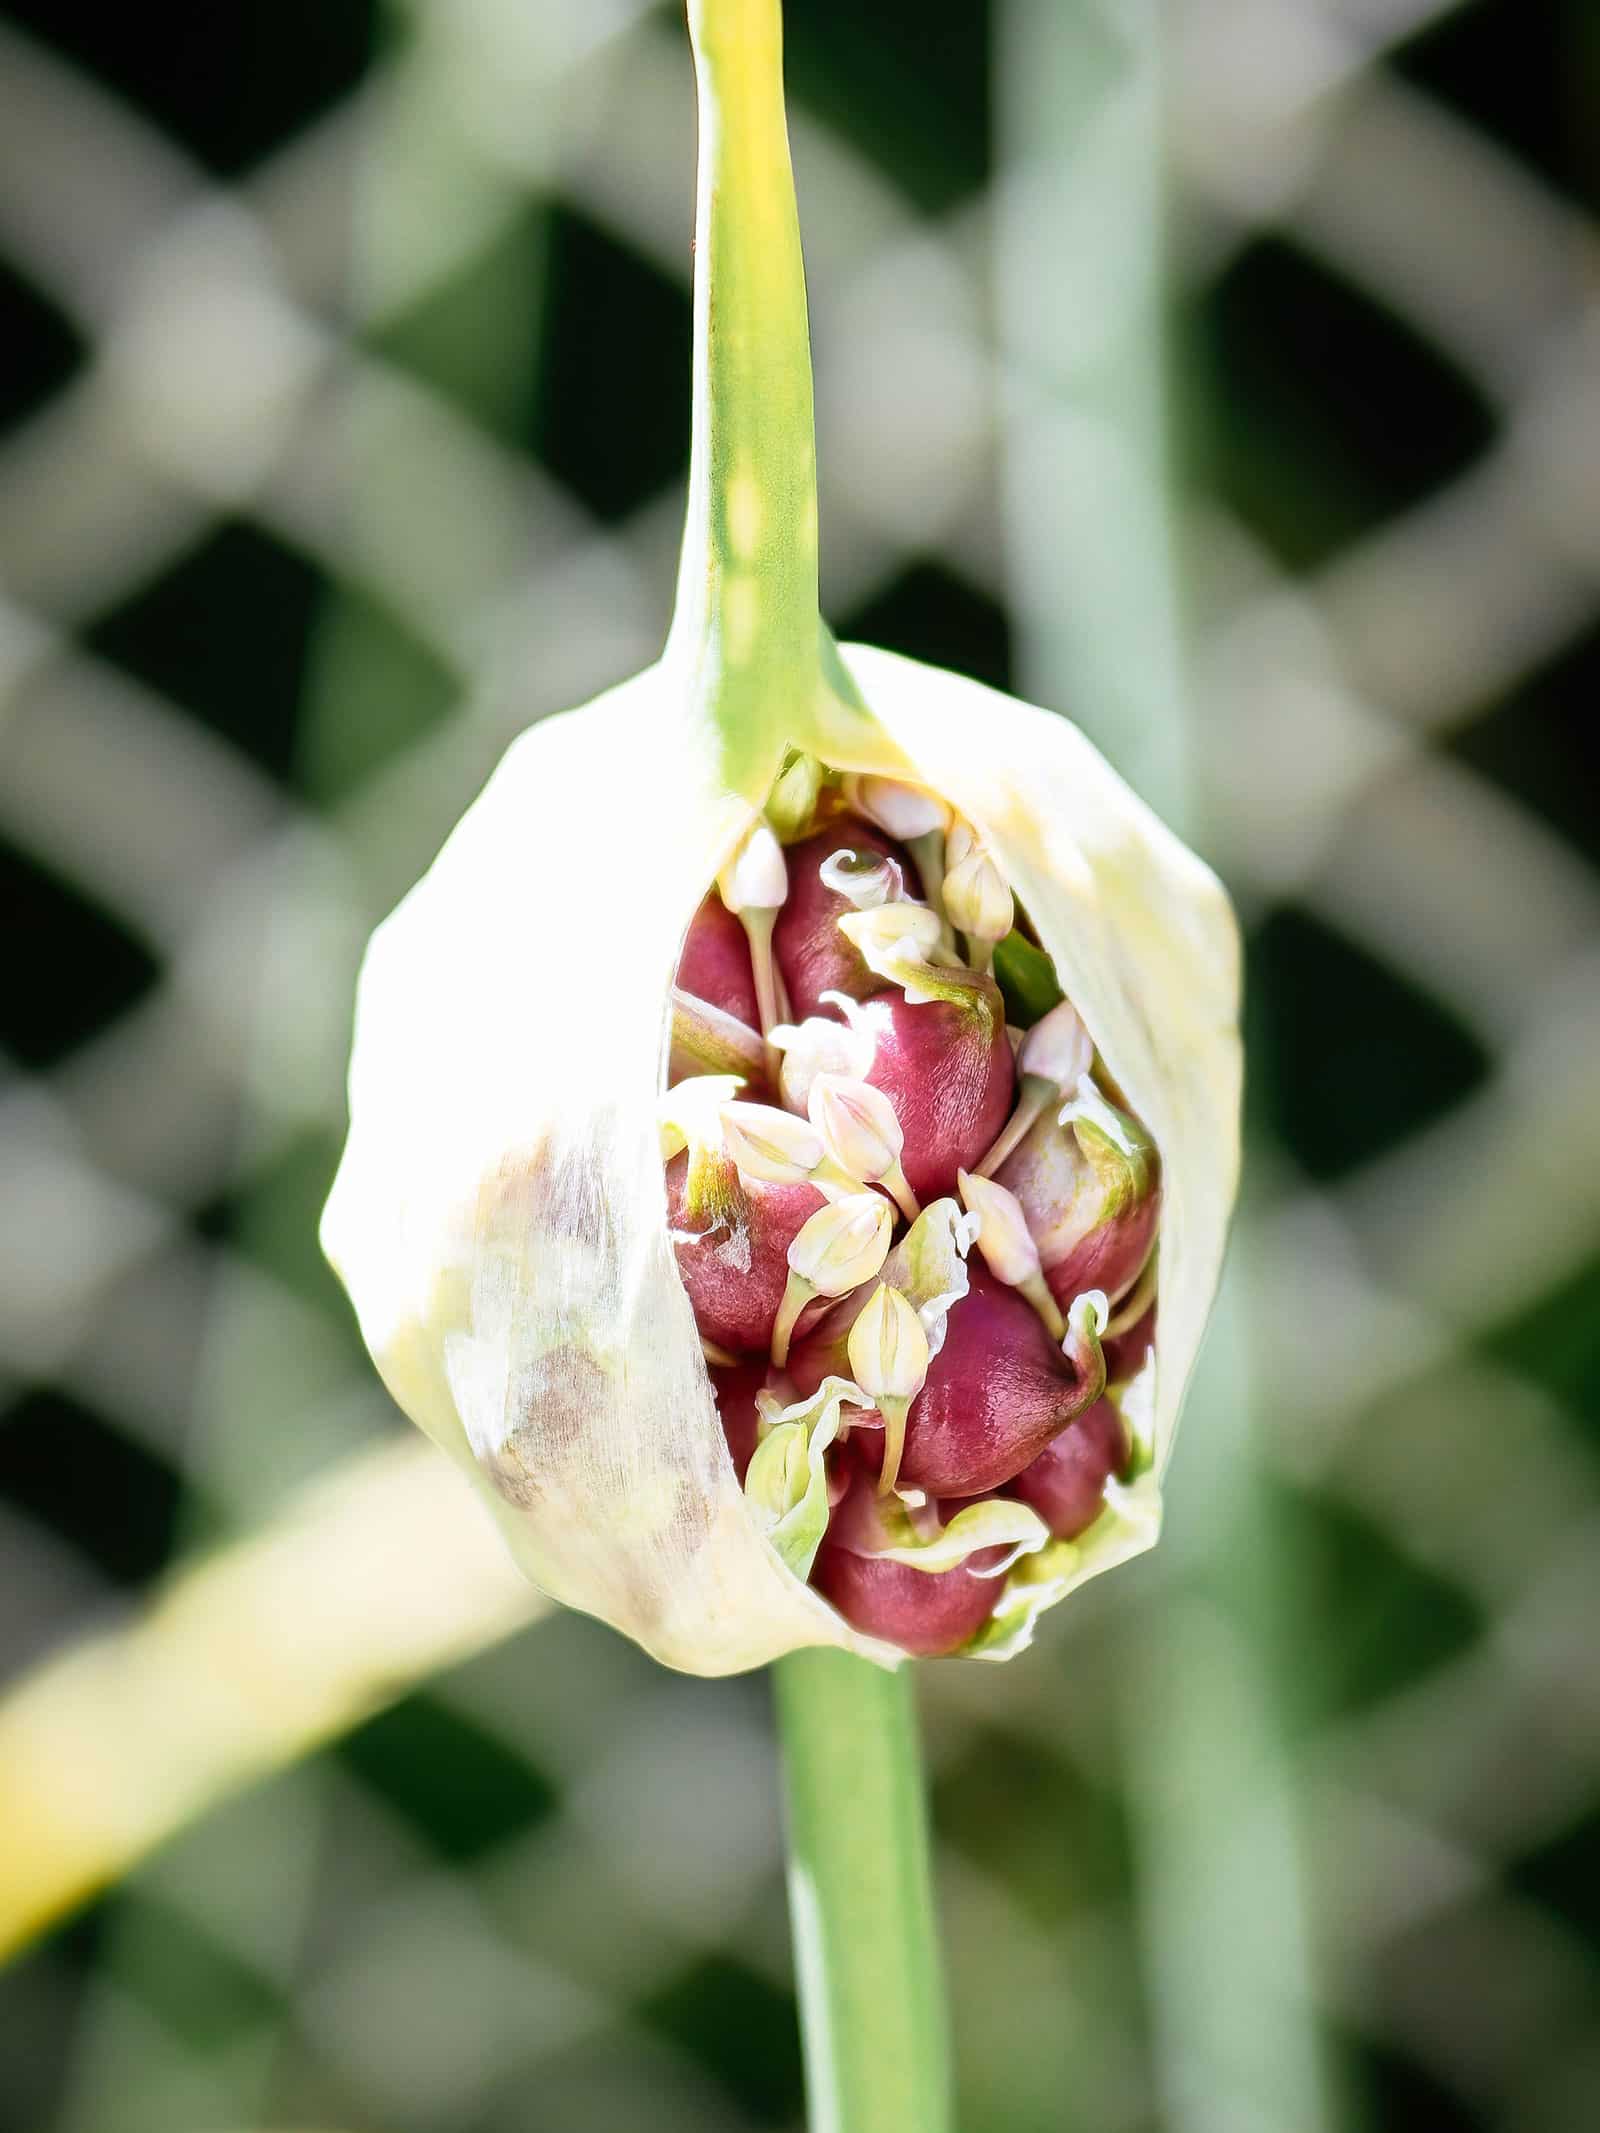 Garlic bulbils emerging from an inflorescence